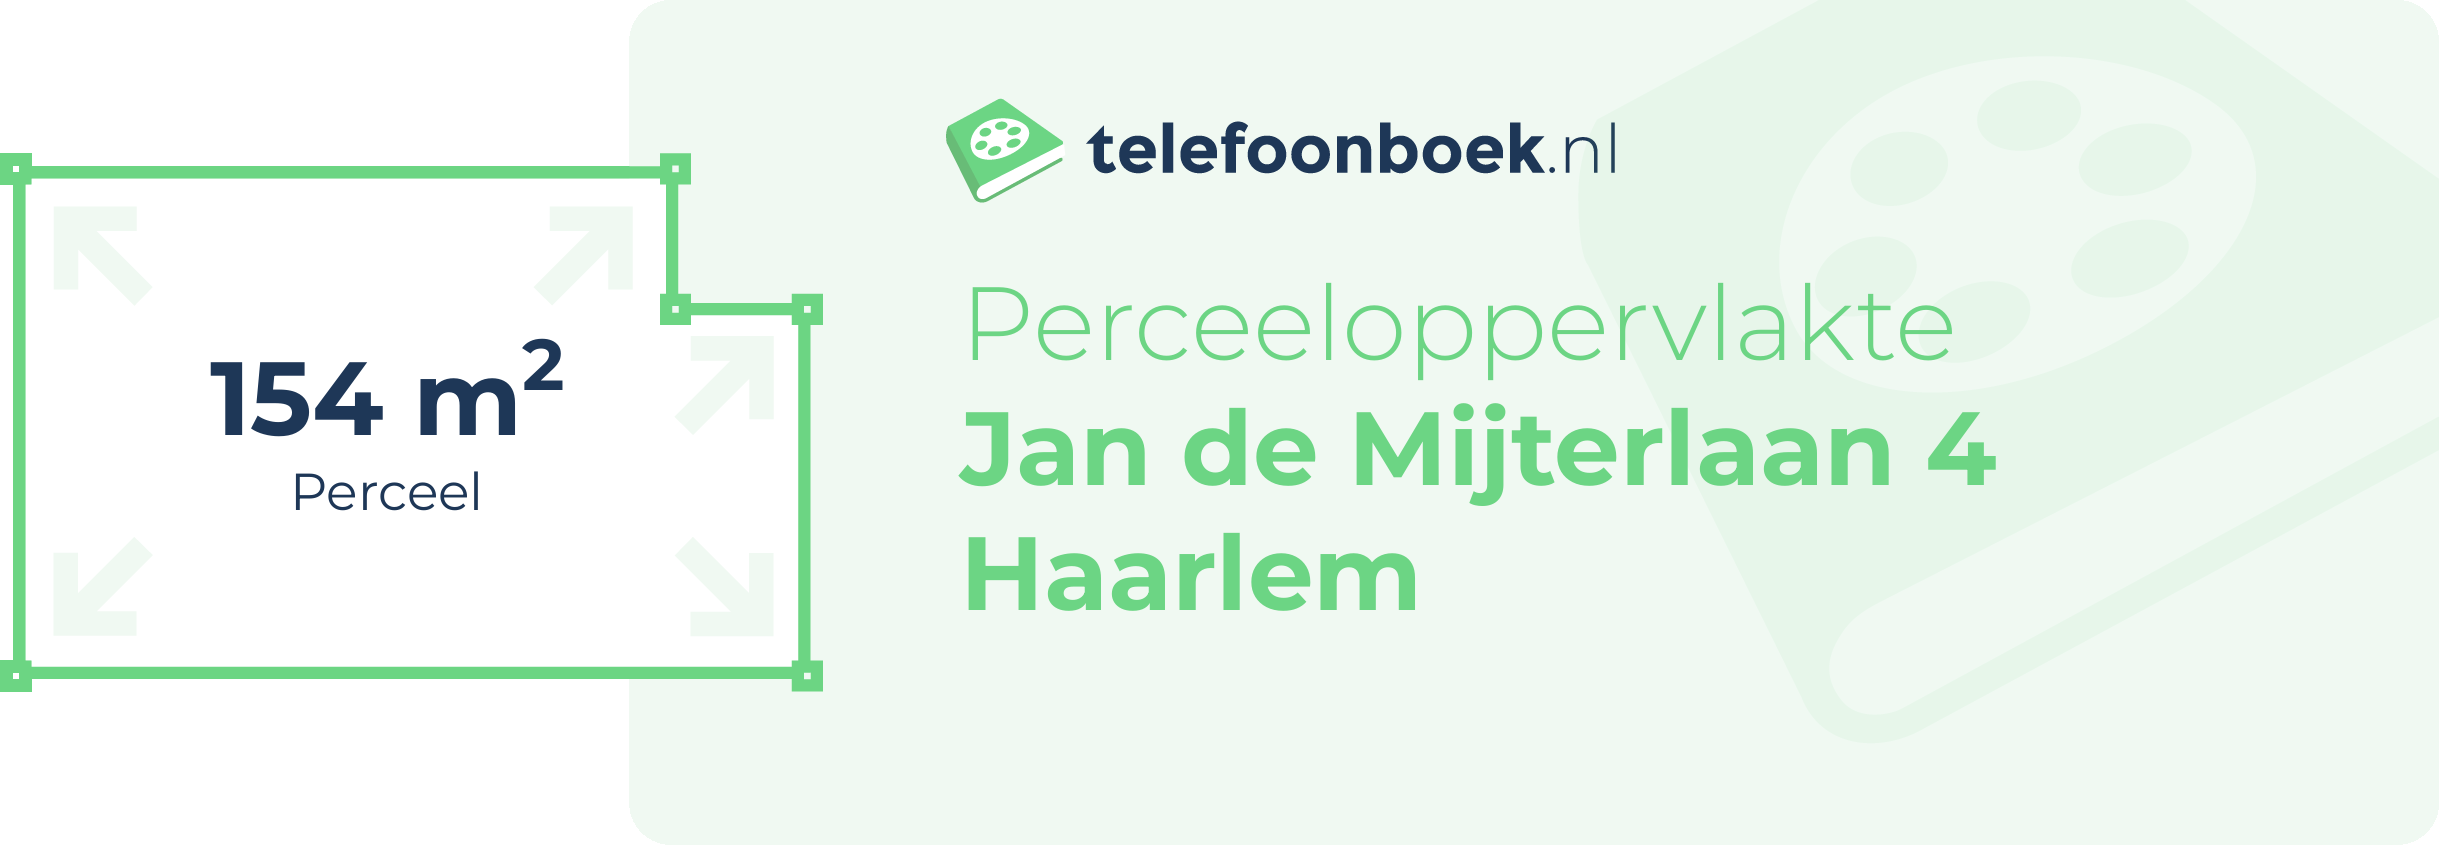 Perceeloppervlakte Jan De Mijterlaan 4 Haarlem